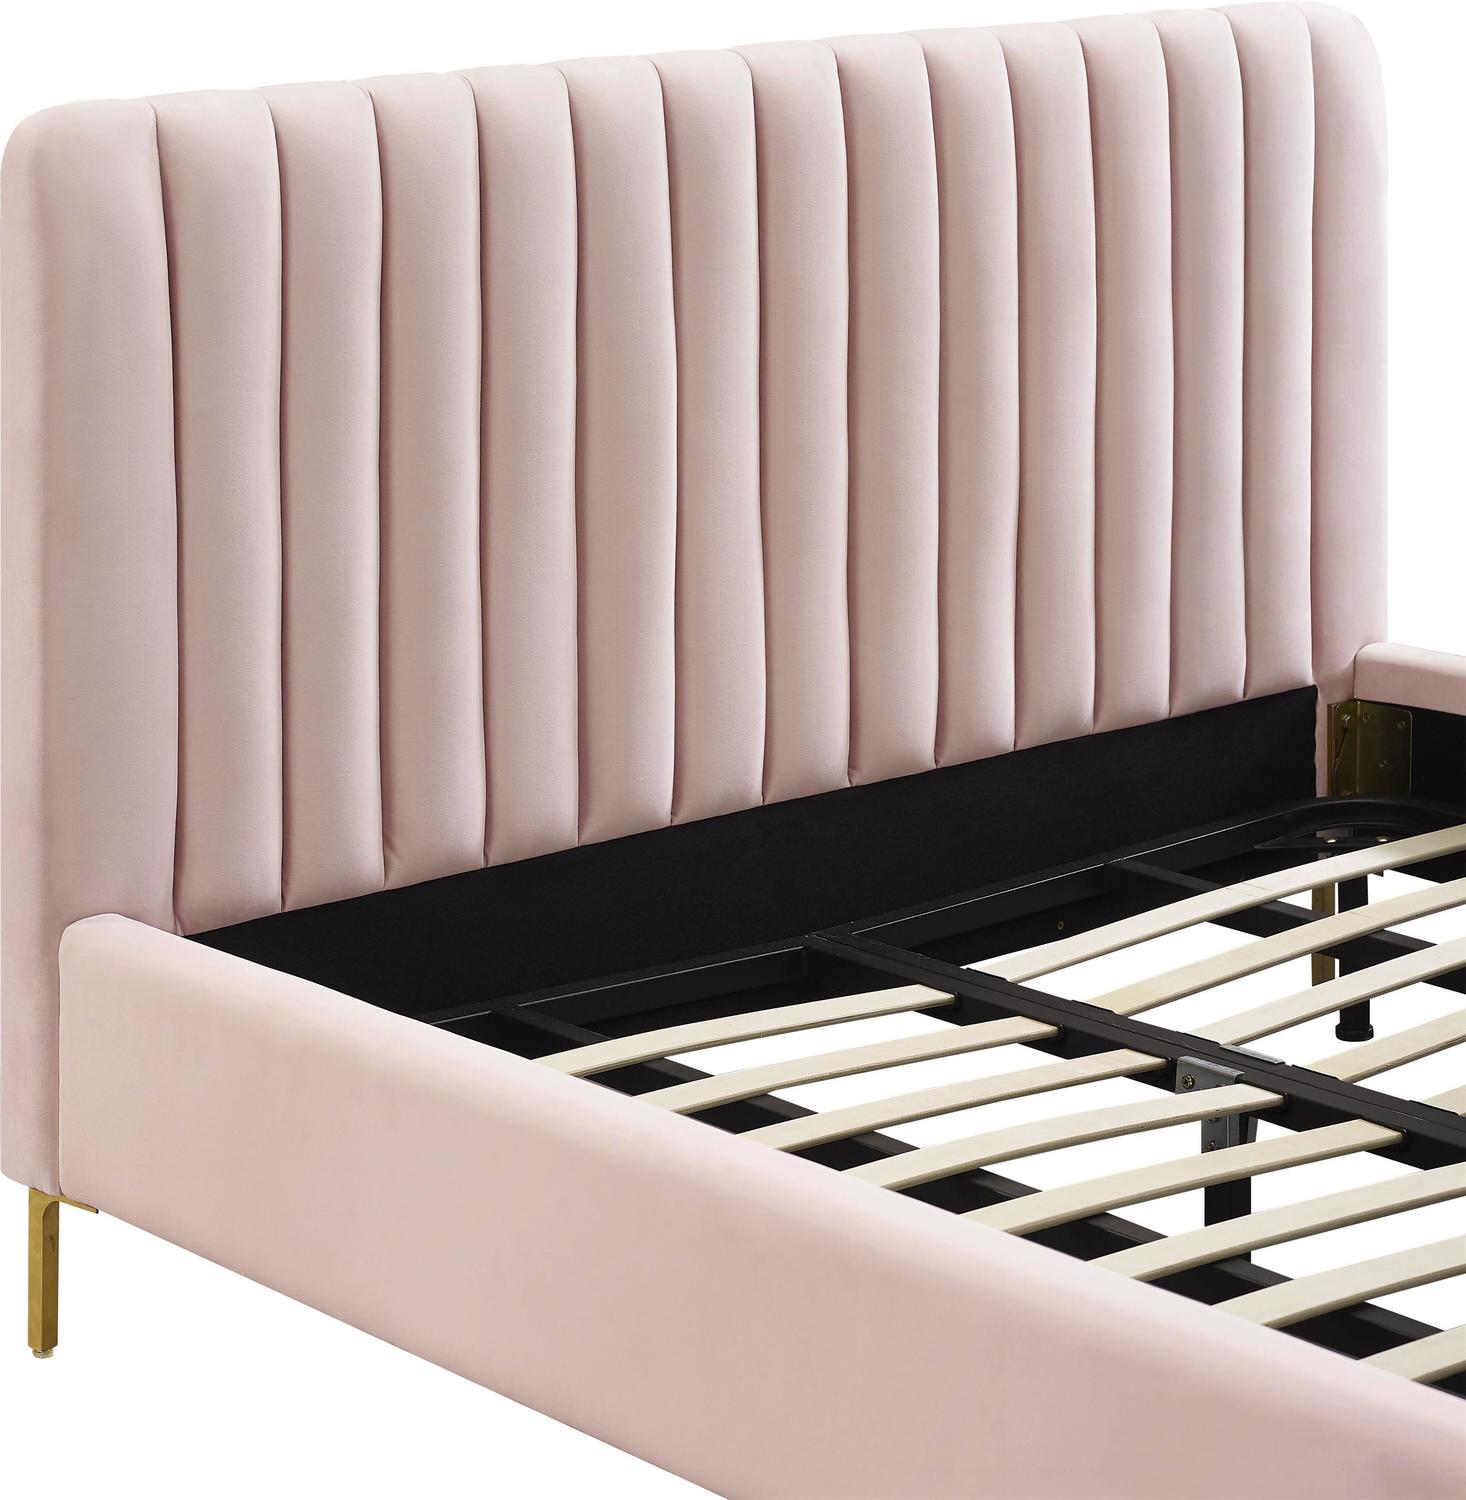 king size platform bed frame near me Contemporary Design Furniture Beds Blush